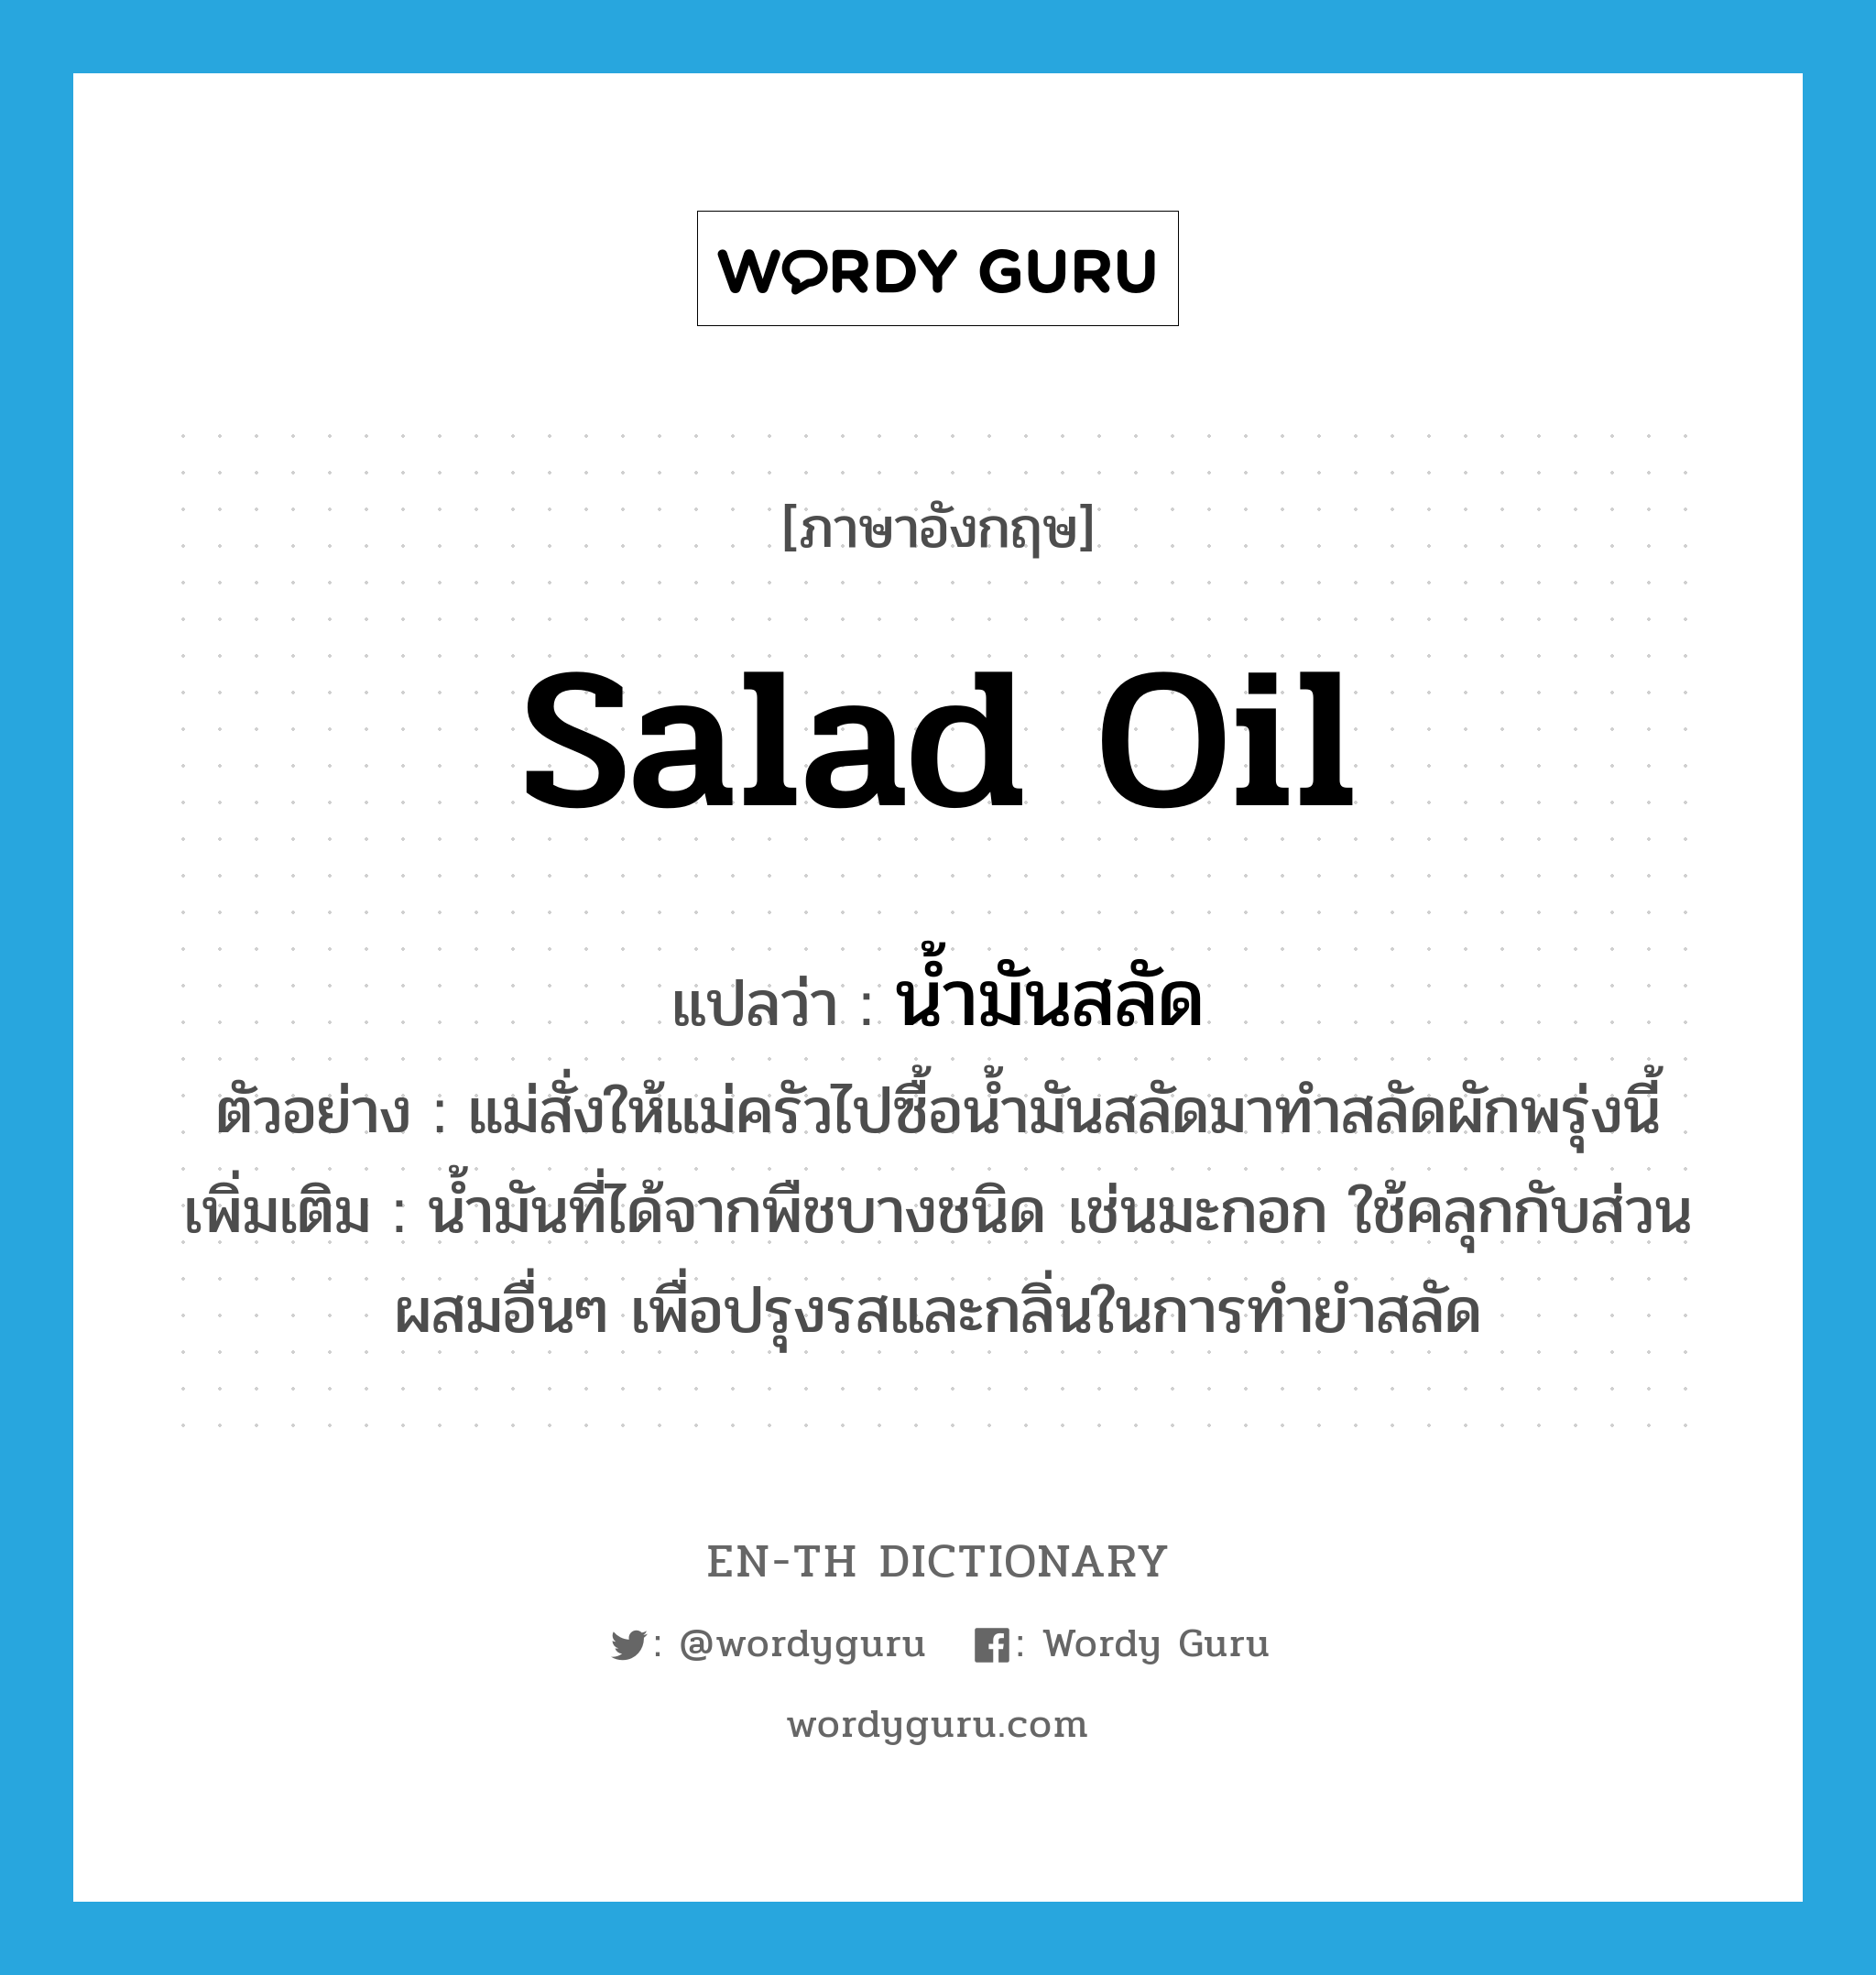 น้ำมันสลัด ภาษาอังกฤษ?, คำศัพท์ภาษาอังกฤษ น้ำมันสลัด แปลว่า salad oil ประเภท N ตัวอย่าง แม่สั่งให้แม่ครัวไปซื้อน้ำมันสลัดมาทำสลัดผักพรุ่งนี้ เพิ่มเติม น้ำมันที่ได้จากพืชบางชนิด เช่นมะกอก ใช้คลุกกับส่วนผสมอื่นๆ เพื่อปรุงรสและกลิ่นในการทำยำสลัด หมวด N